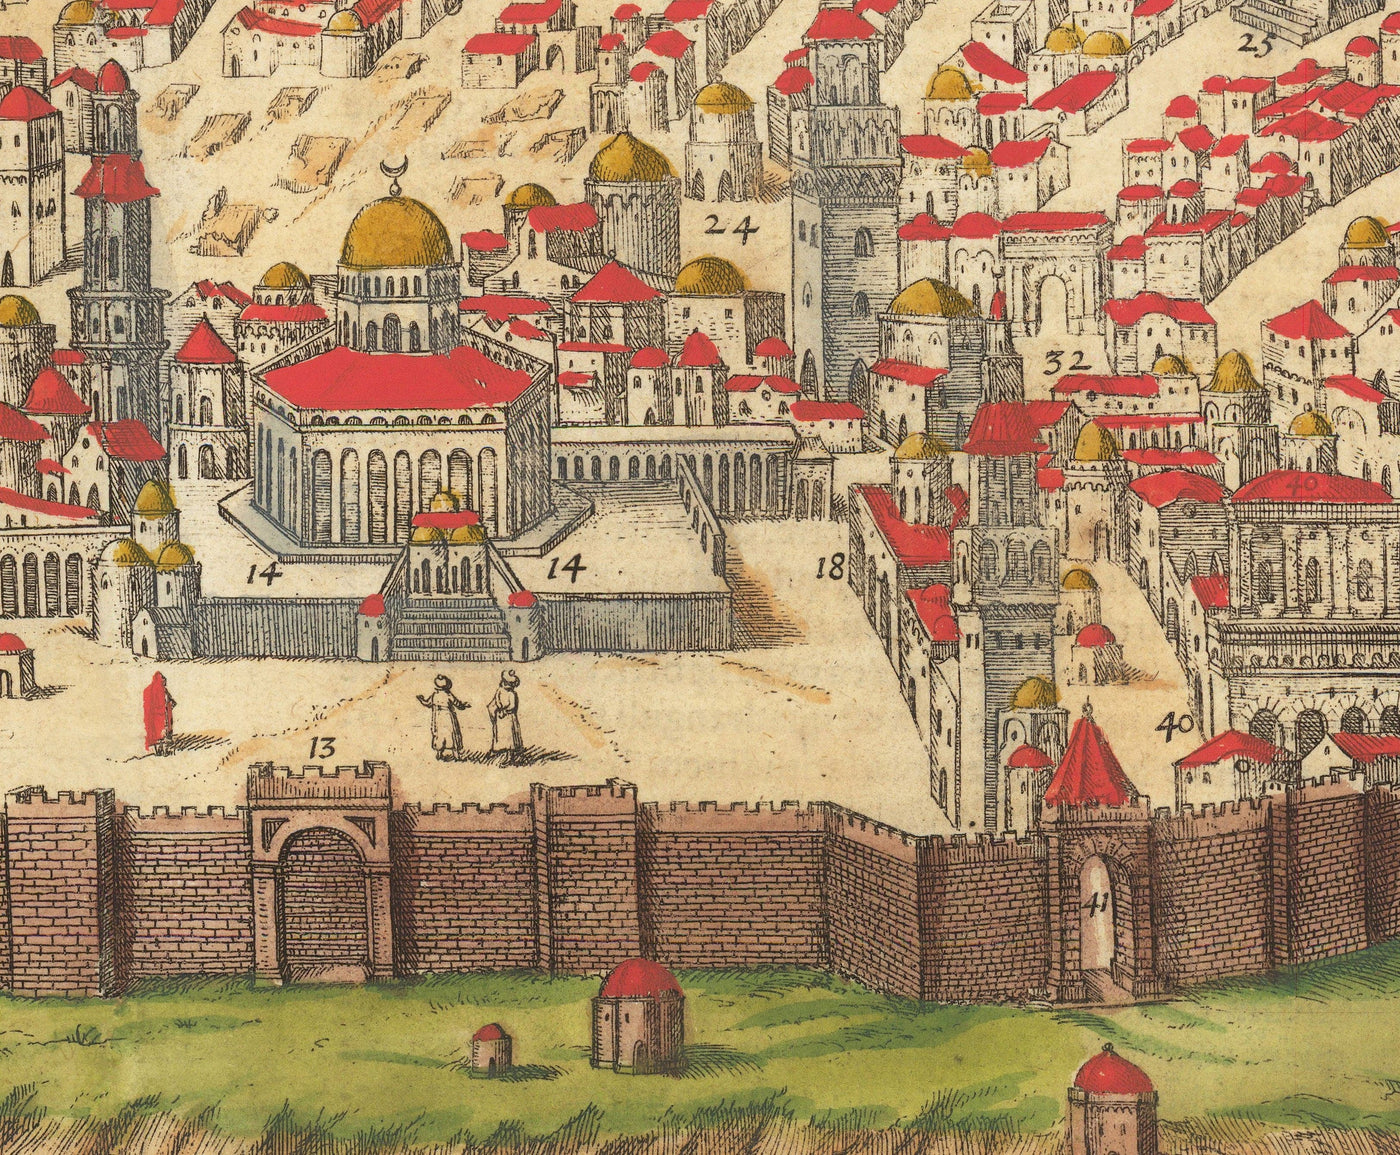 Viejo mapa de Jerusalén, 1582 de Georg Braun - Ciudad vieja de Judía y Islam, Monte del templo, Muros de la ciudad, Torre de David, Puerta de Jaffa